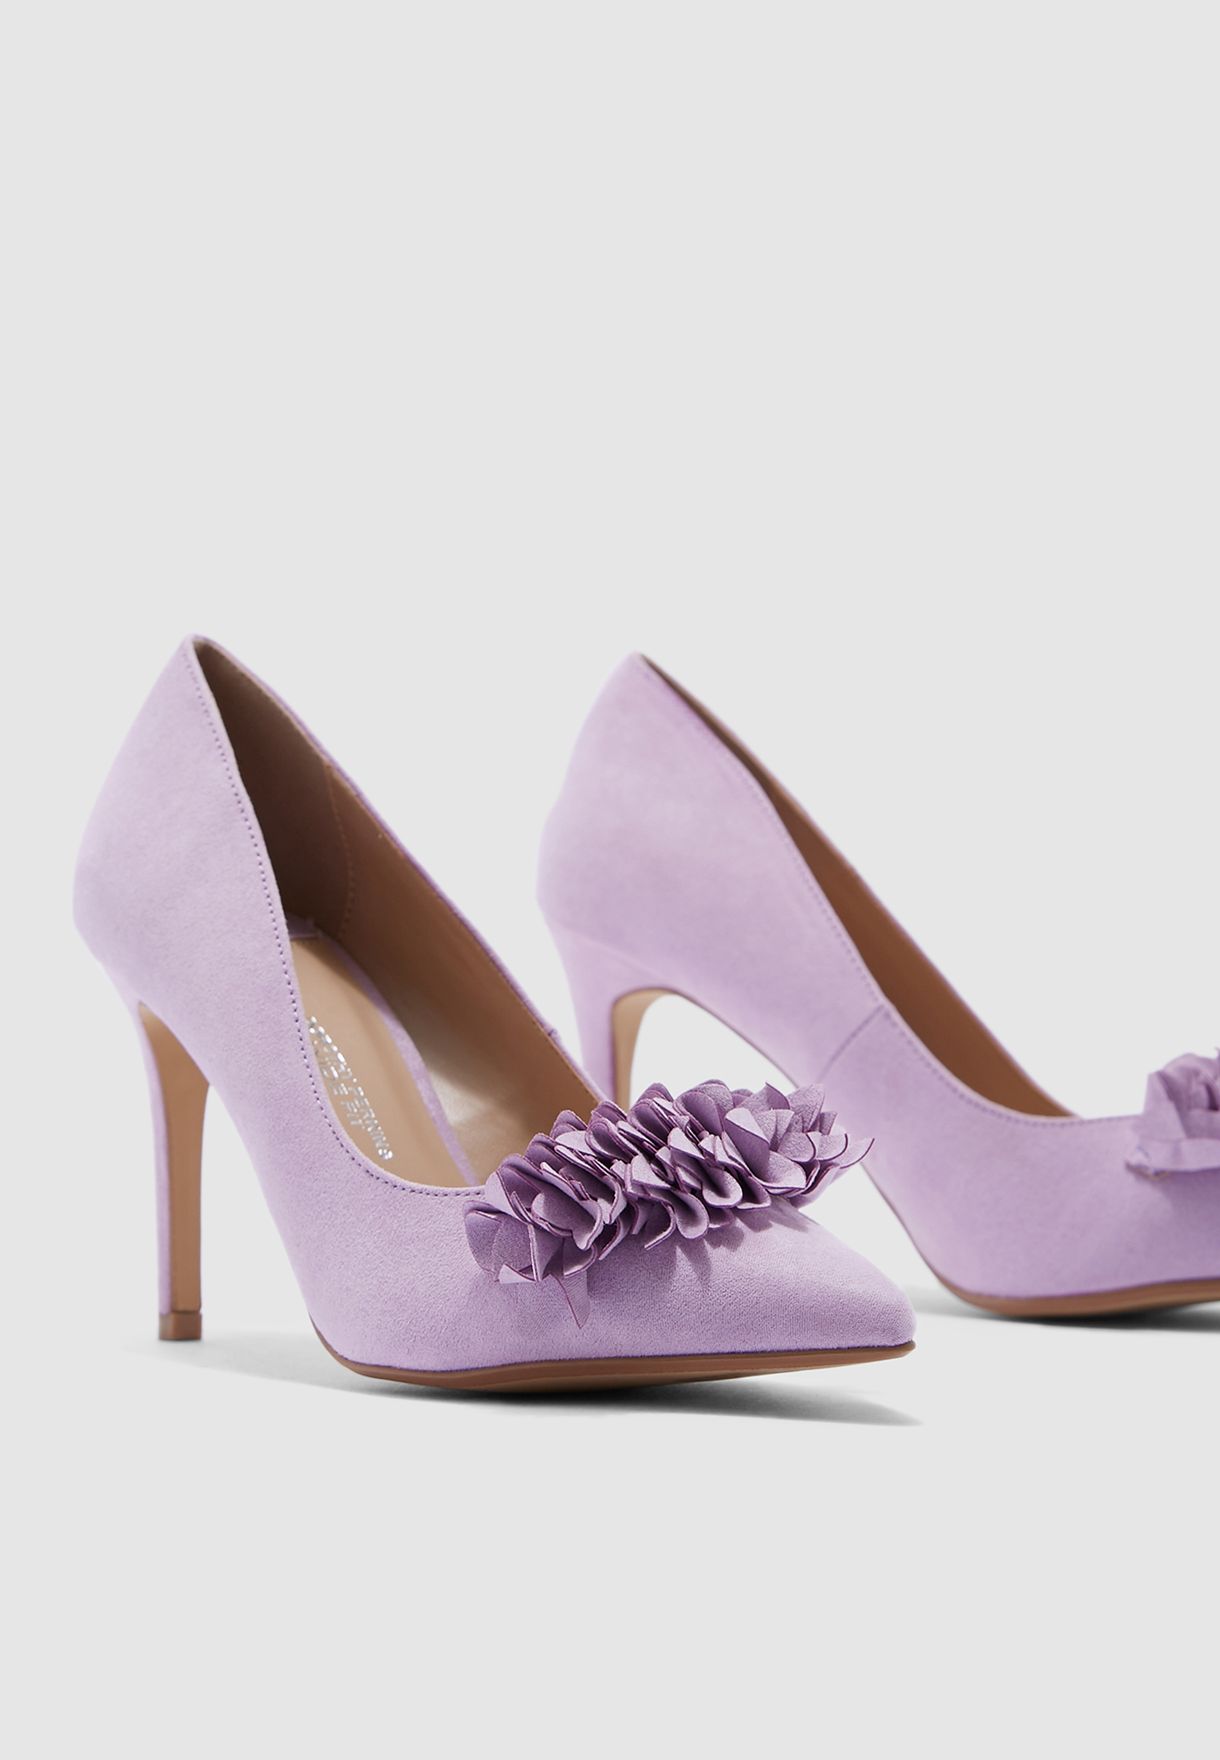 purple wide fit shoes